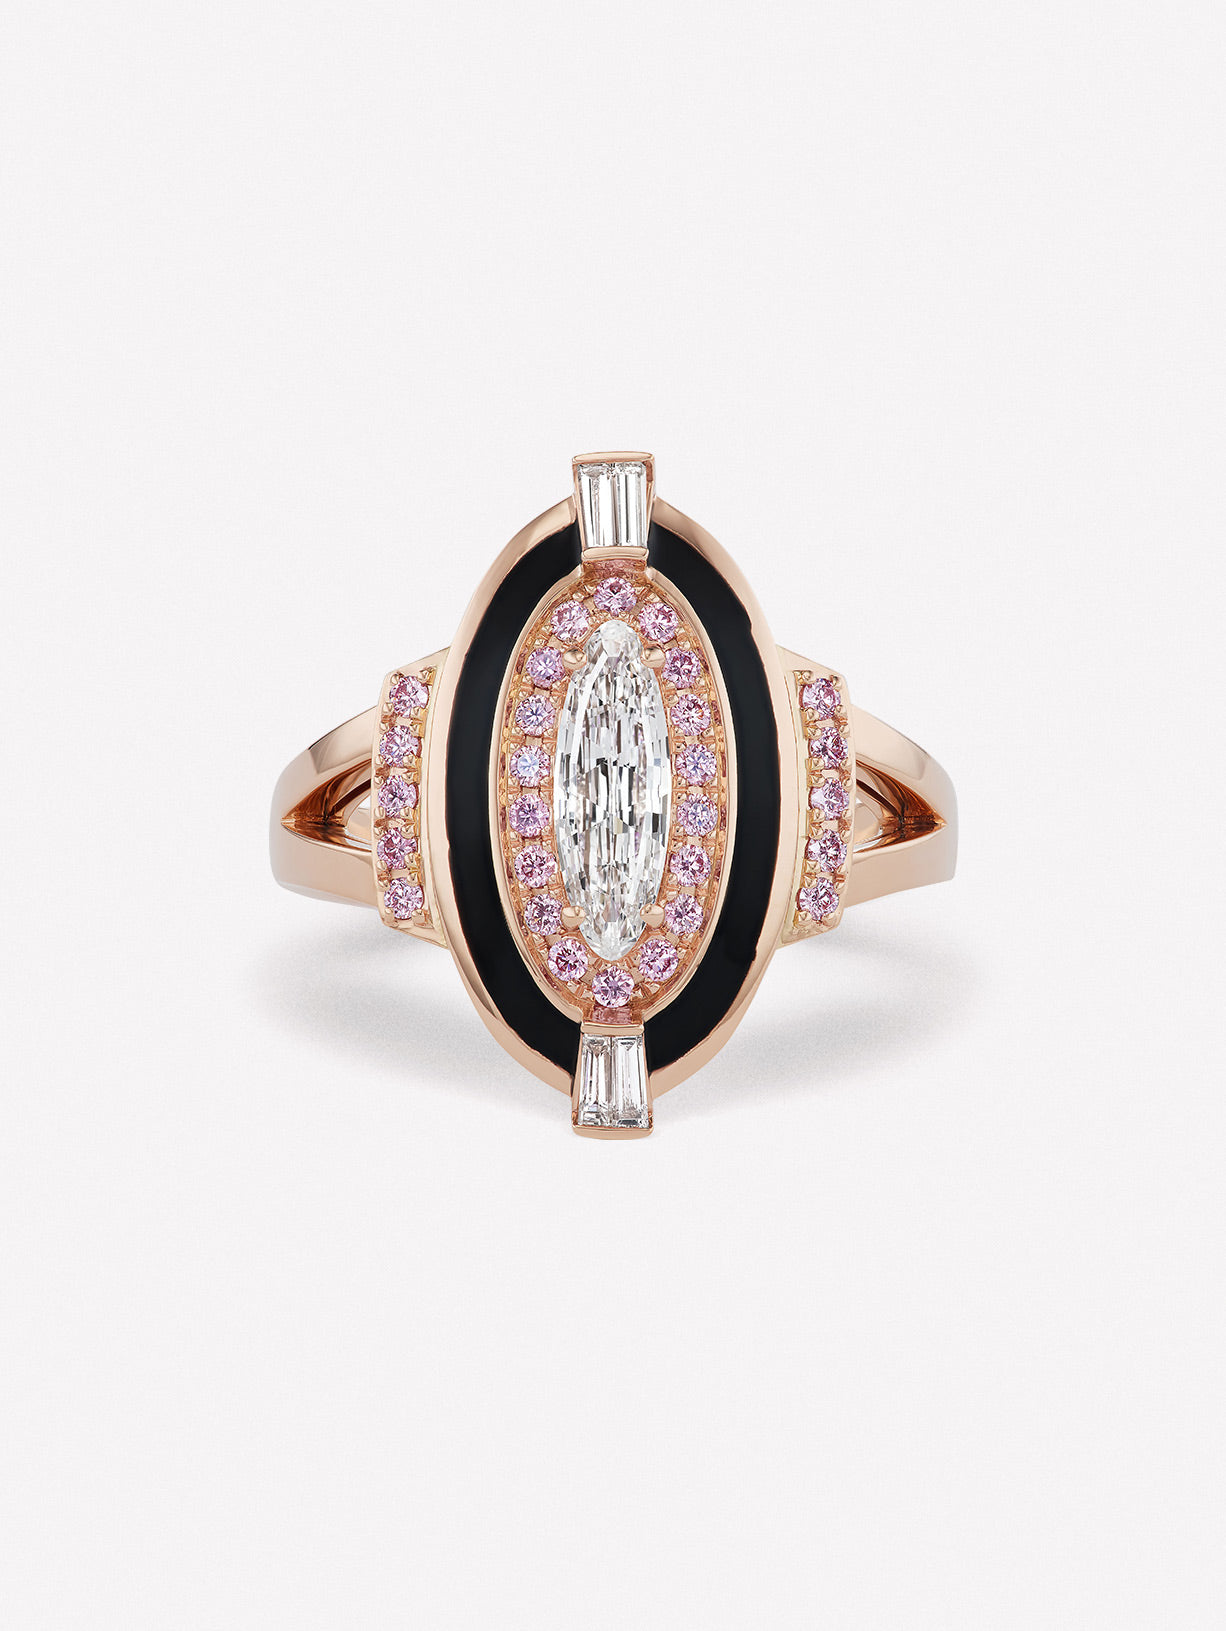 Argyle Pink™ Diamond and White Diamond Enamel Ring - Pink Diamonds, J FINE - J Fine, Rings - Pink Diamond Jewelry, argyle-pink™-diamond-and-white-diamond-enamel-ring-by-j-fine - Argyle Pi